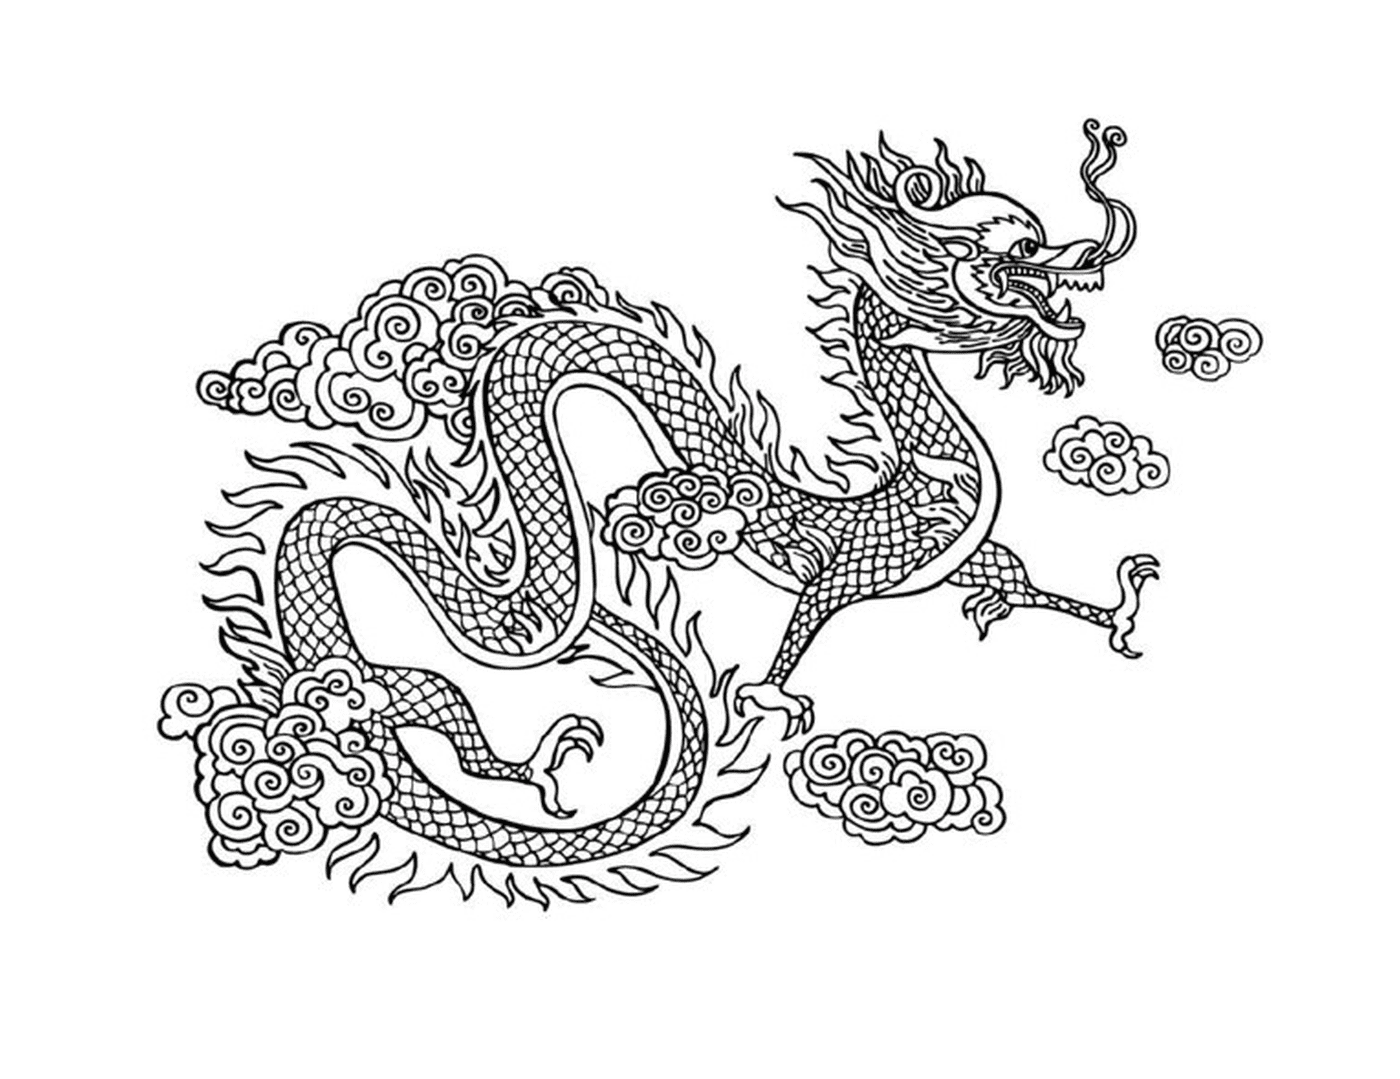   Dragon oriental aux airs mystérieux, entouré de nuages 